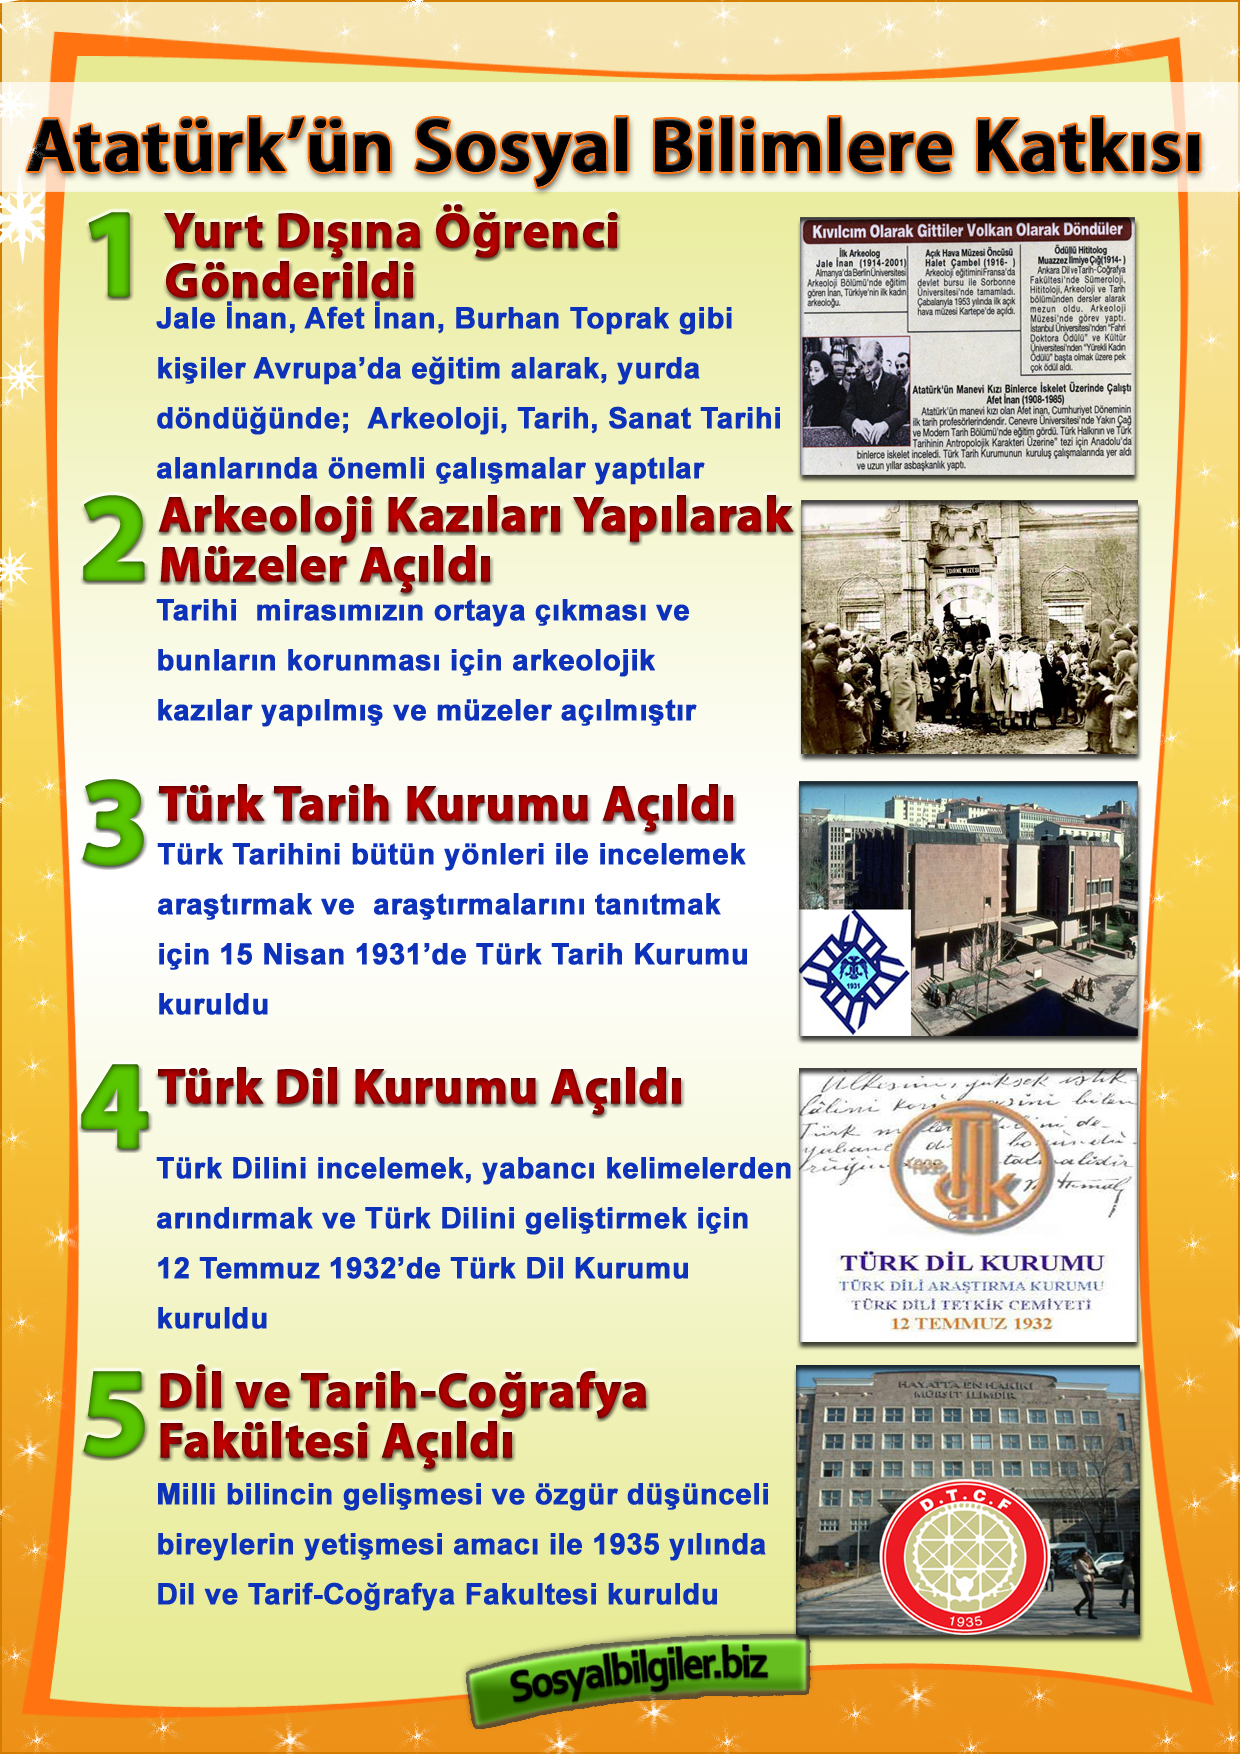 Atatürk ve Sosyal Bilimler .jpg